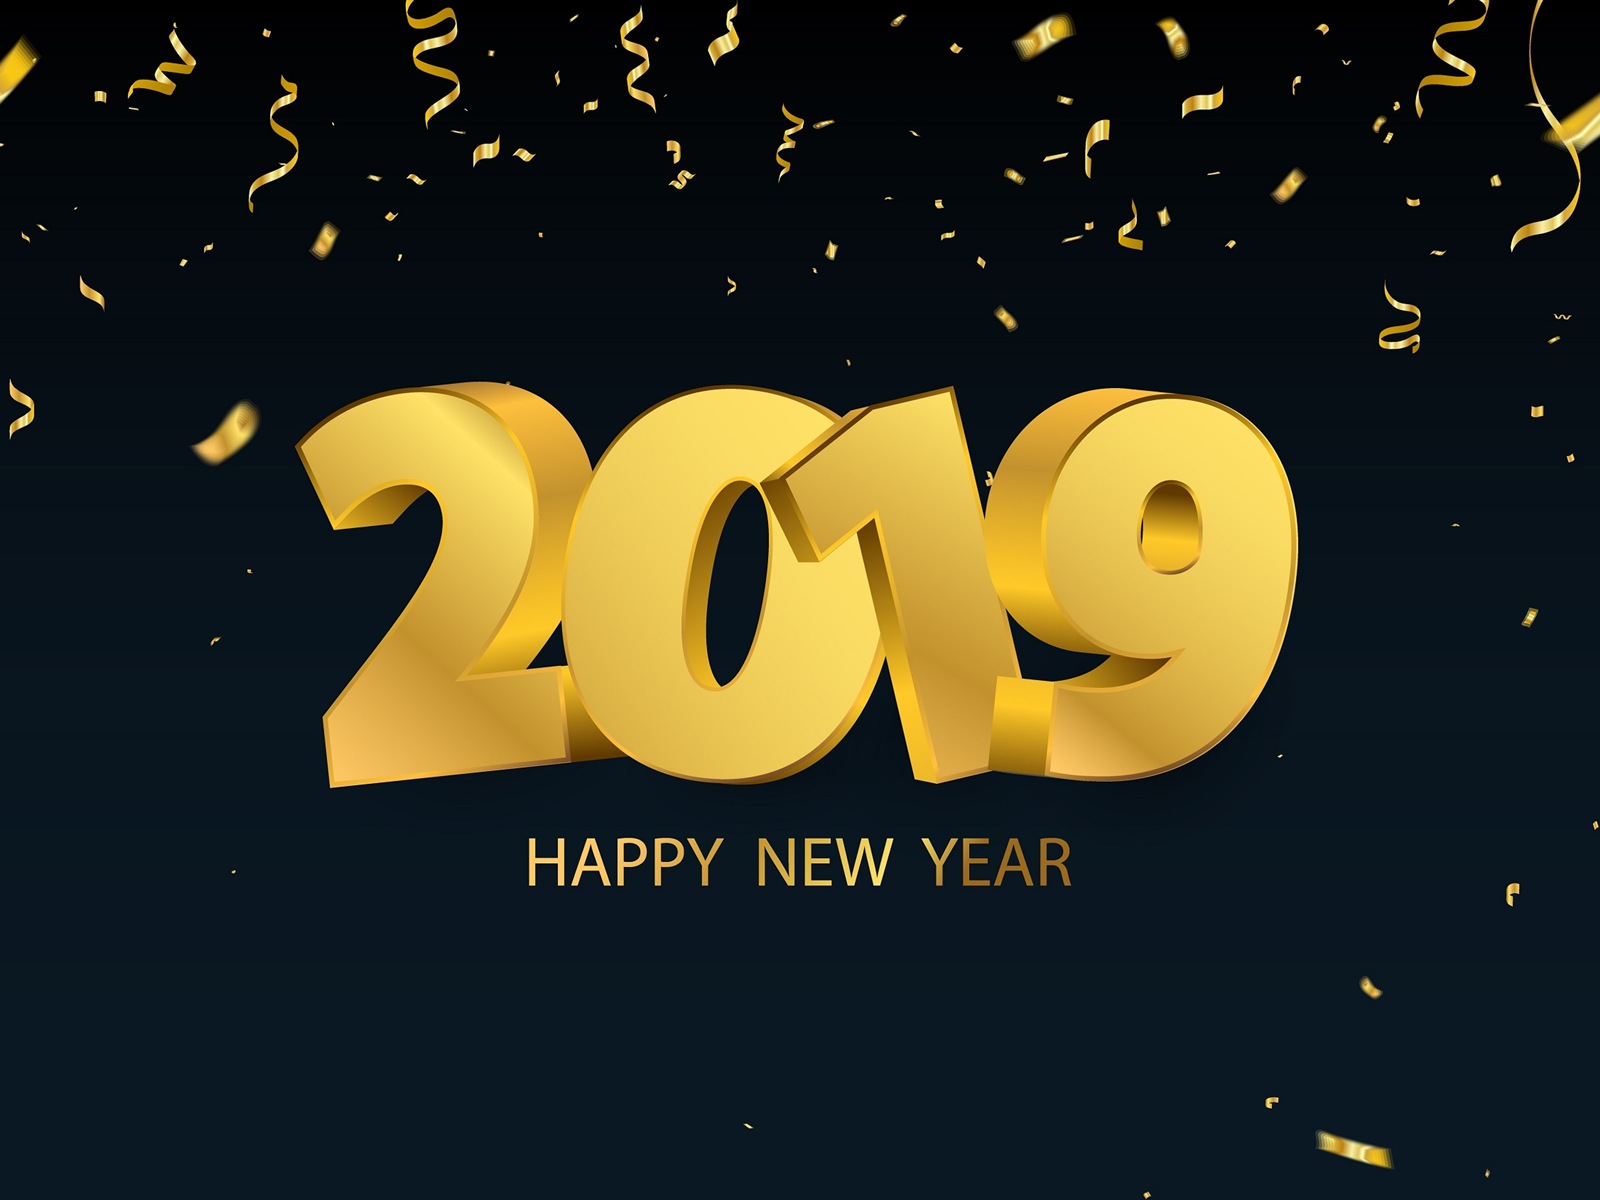 Feliz año nuevo 2019 HD wallpapers #13 - 1600x1200